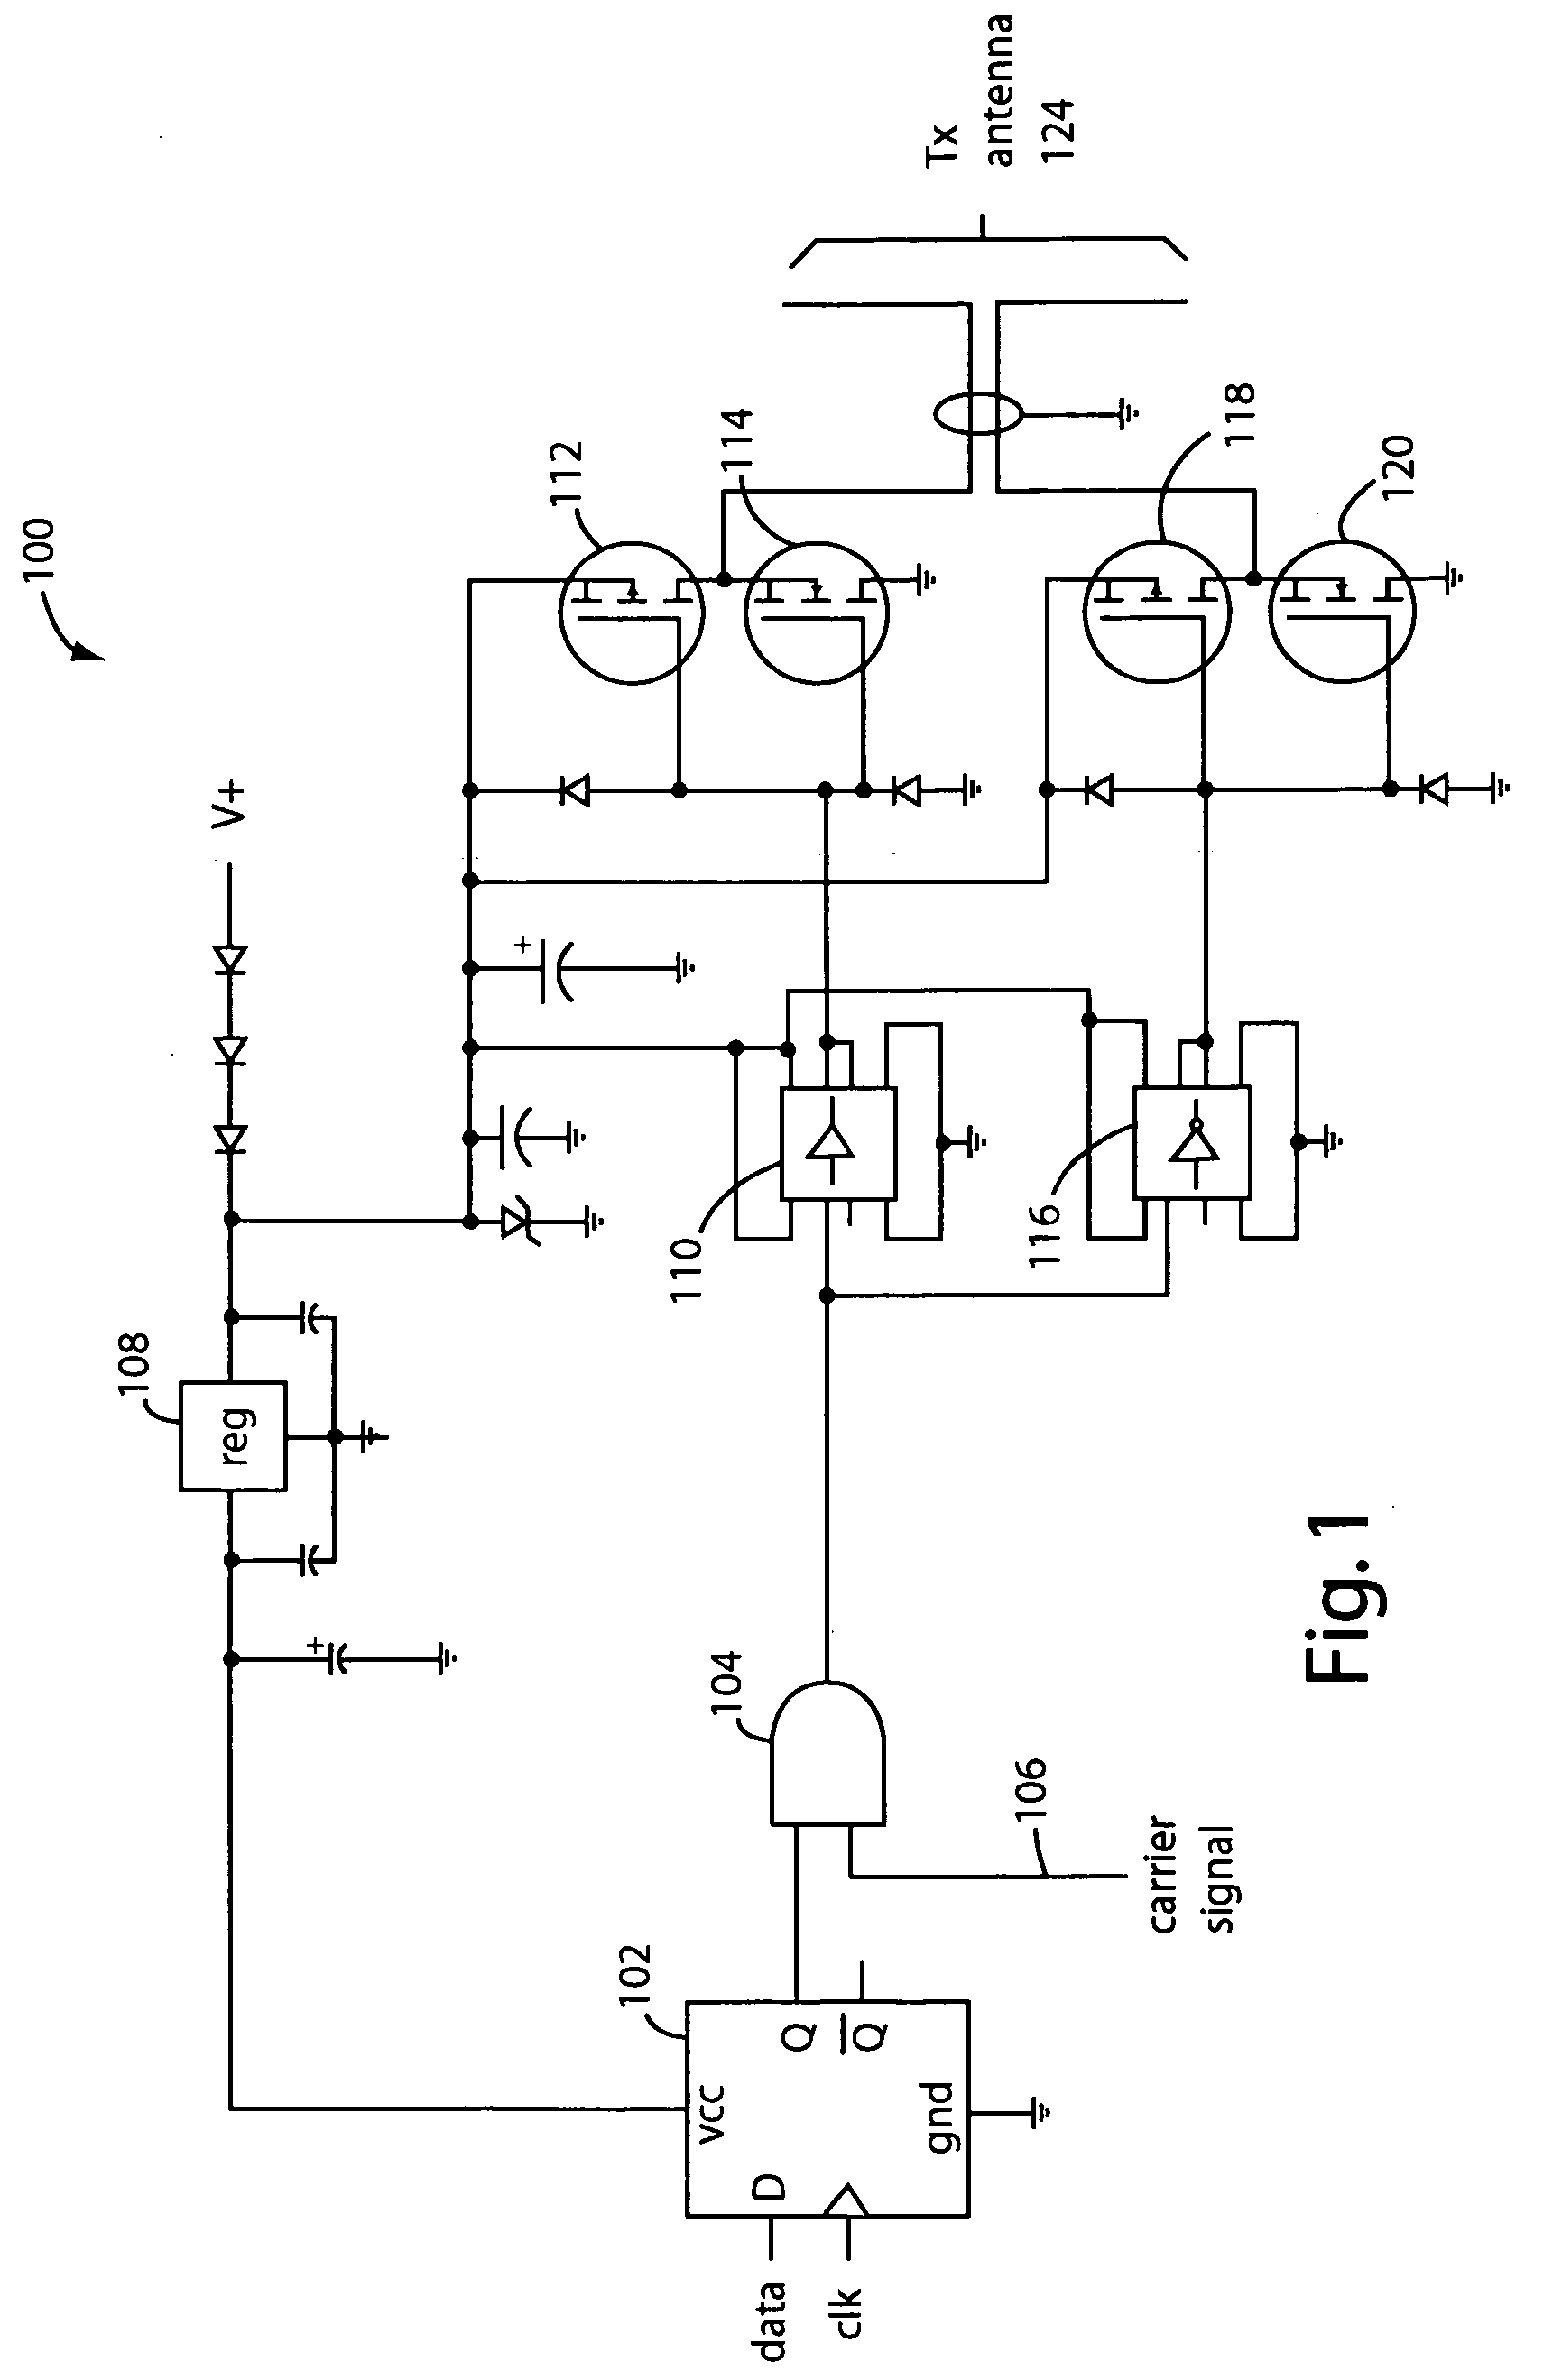 Class-L power-output amplifier